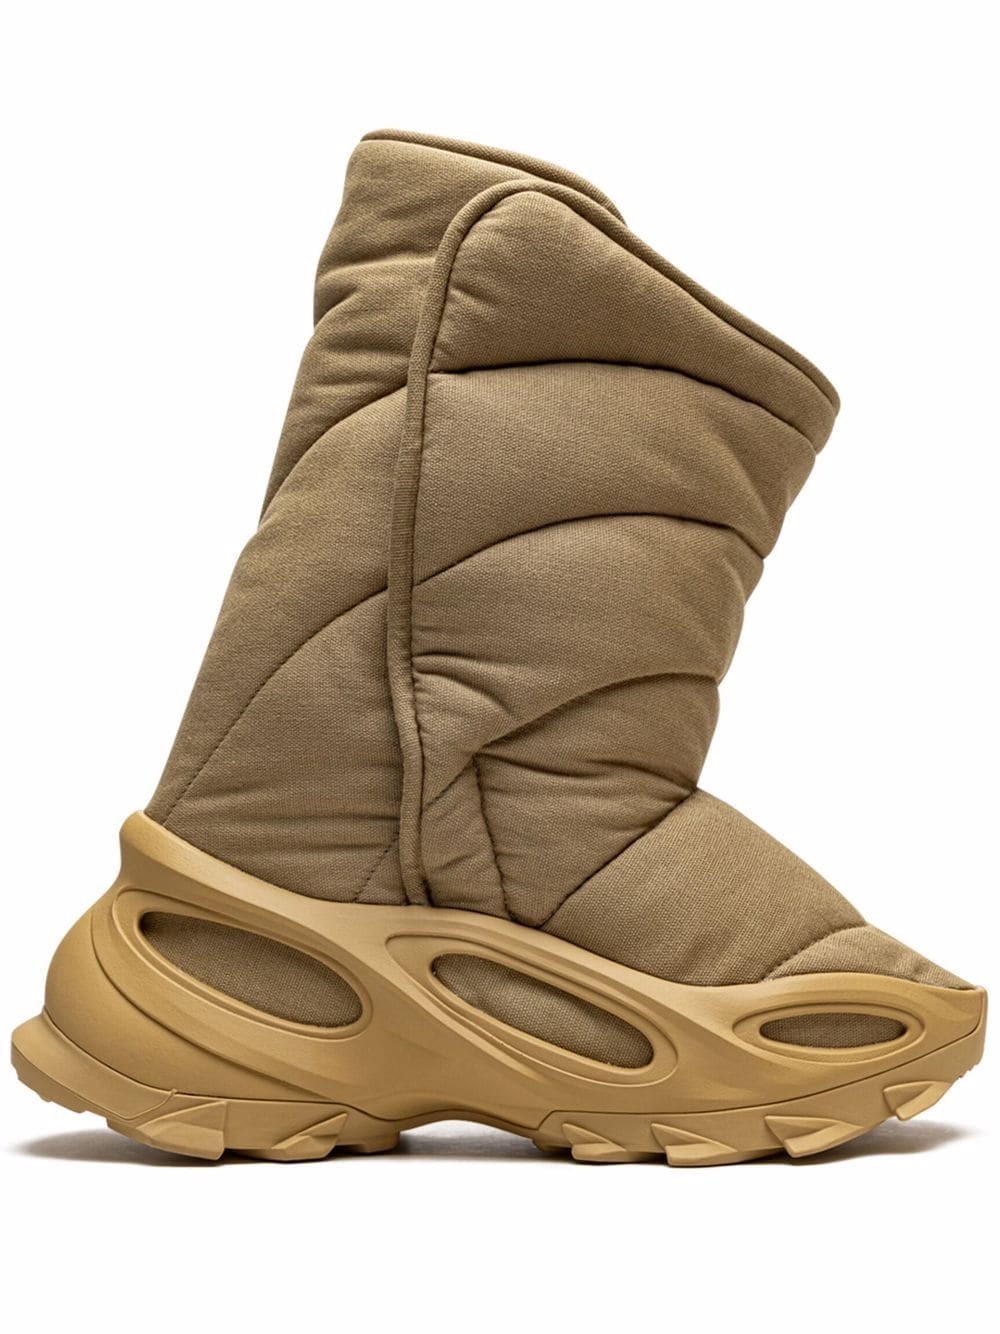 adidas Yeezy YEEZY insulated boots - Neutrals von adidas Yeezy